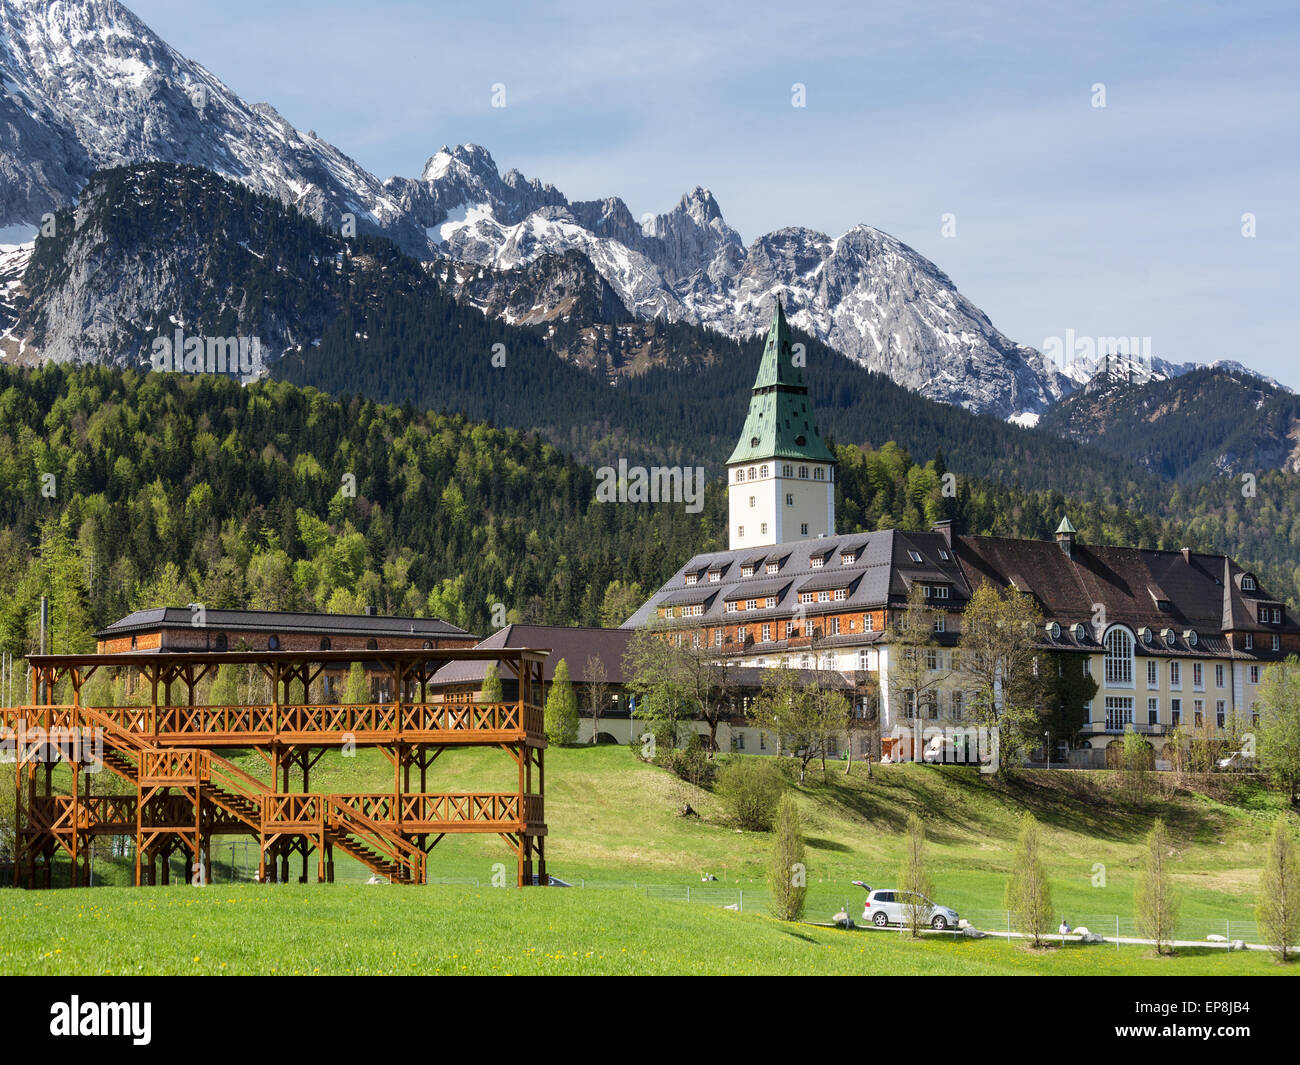 Schlosshotel Schloss Elmau, Veranstaltungsort des G7-Gipfels in 2015, Stand im Presse-Center auf der linken Seite, Klais, Wettersteingebirge Stockfoto